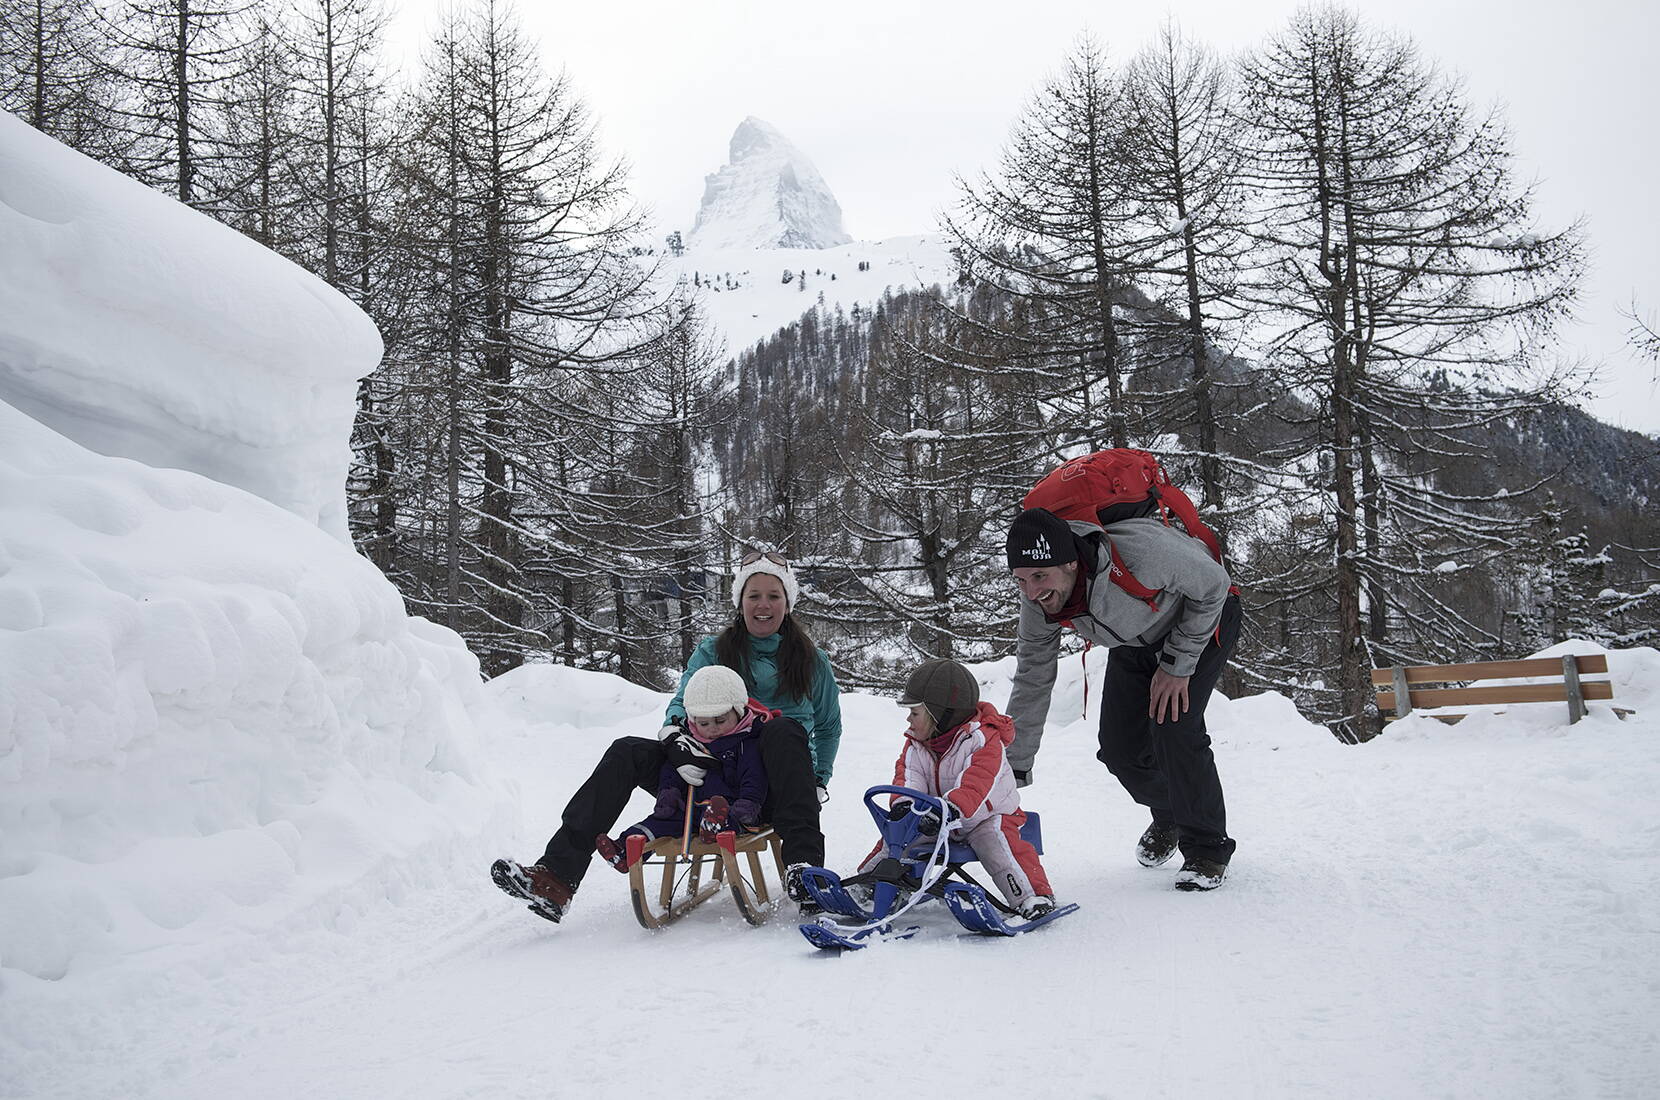 Ein Schlittelplausch mit der Familie ist eines der schönsten Wintererlebnisse in Zermatt. Bevor der ultimative Spass auf der rasanten Abfahrt ins Tal hinunter beginnt, geniesst ihr gemeinsam ein herzhaftes Käsefondue bei einem gemütlichen Hüttenplausch. Ein Erlebnis für Gross und Klein!